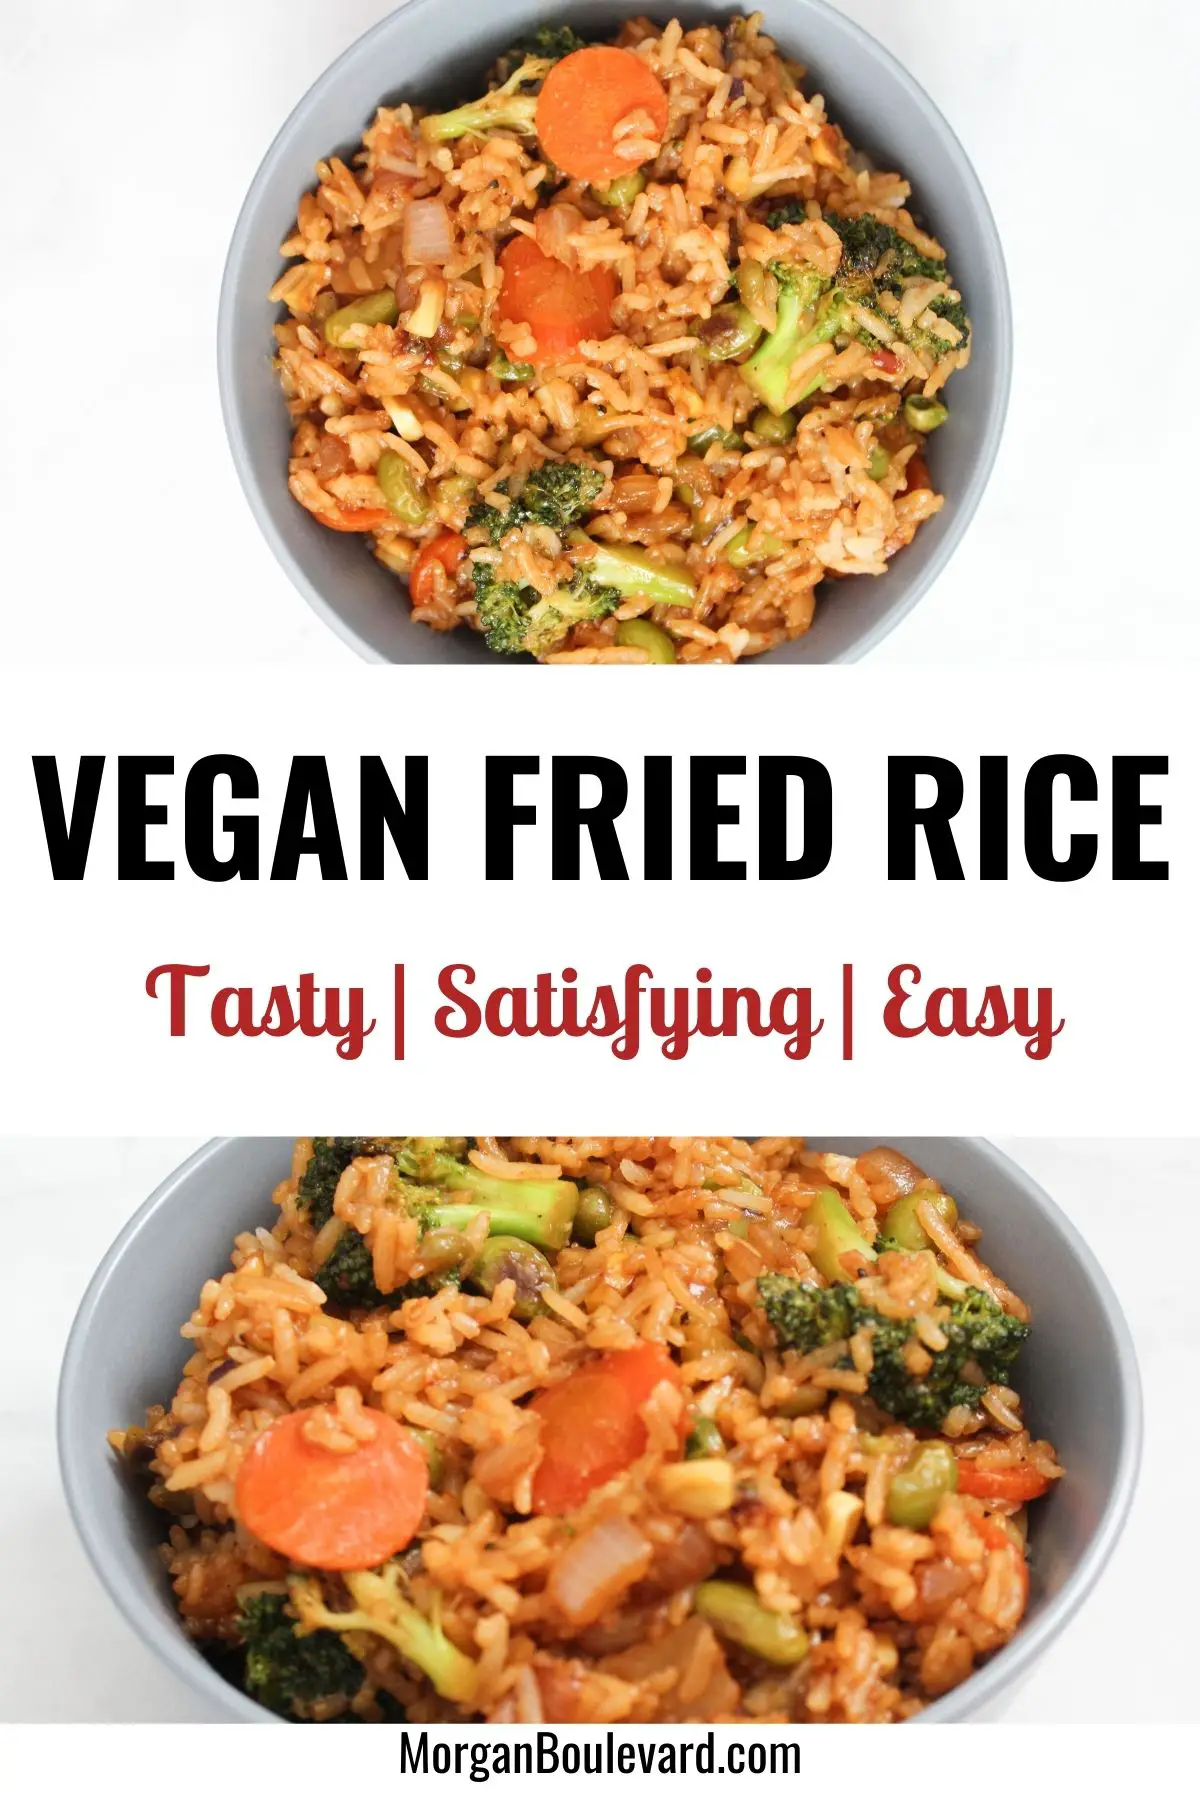 Easy Vegan Fried Rice